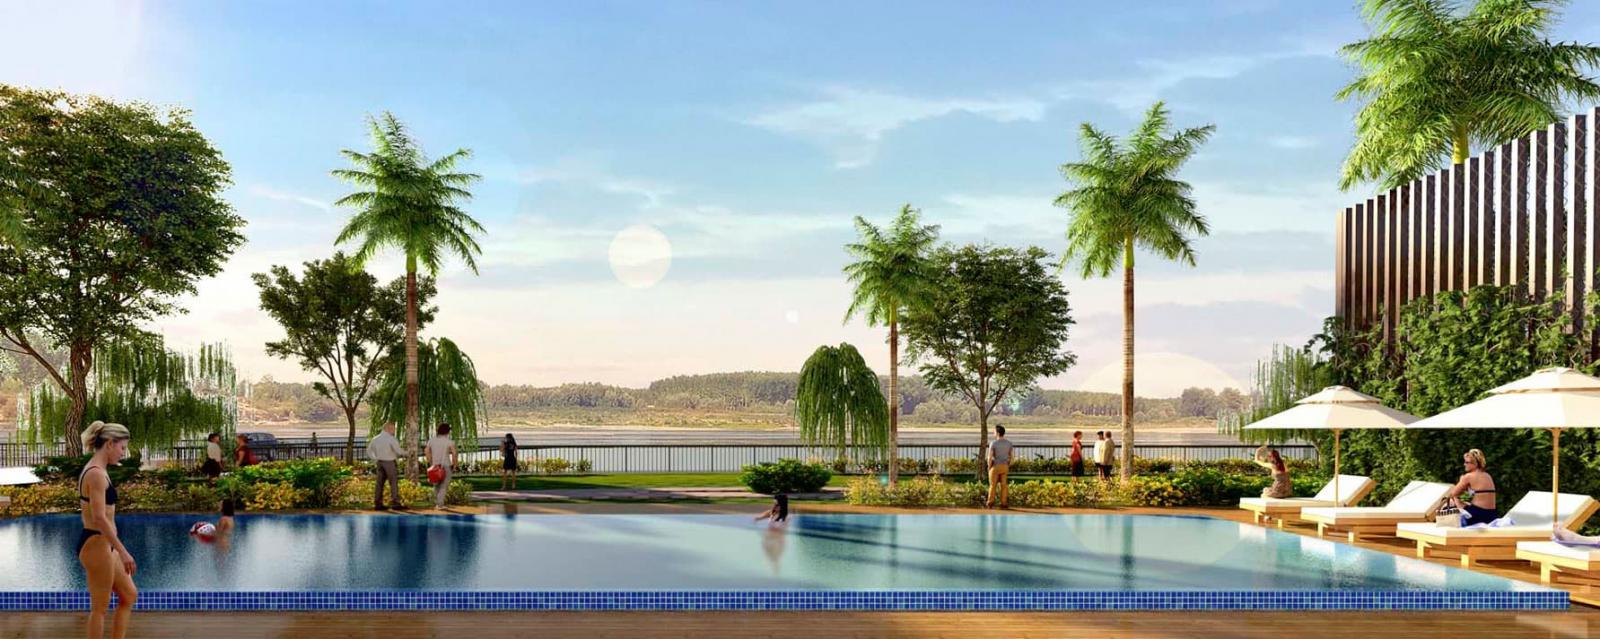 Bể bơi nội khu tại dự án Panomax River Villas